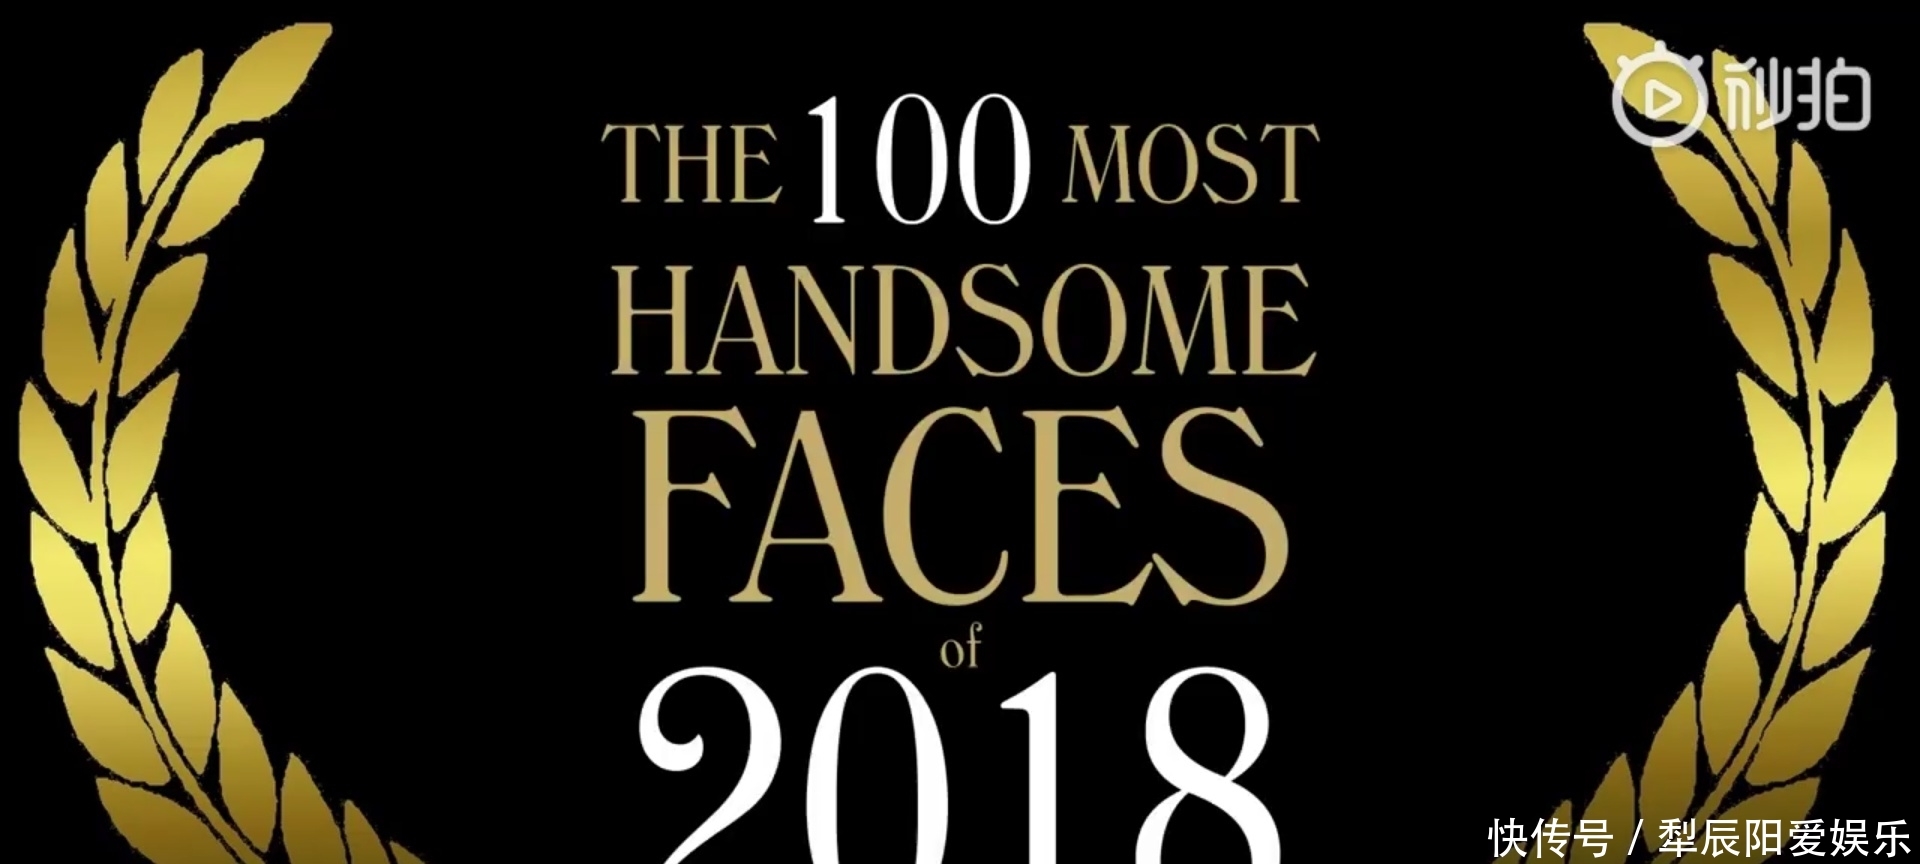 最新 全球最帅的100个面孔 出炉,上榜的这些人